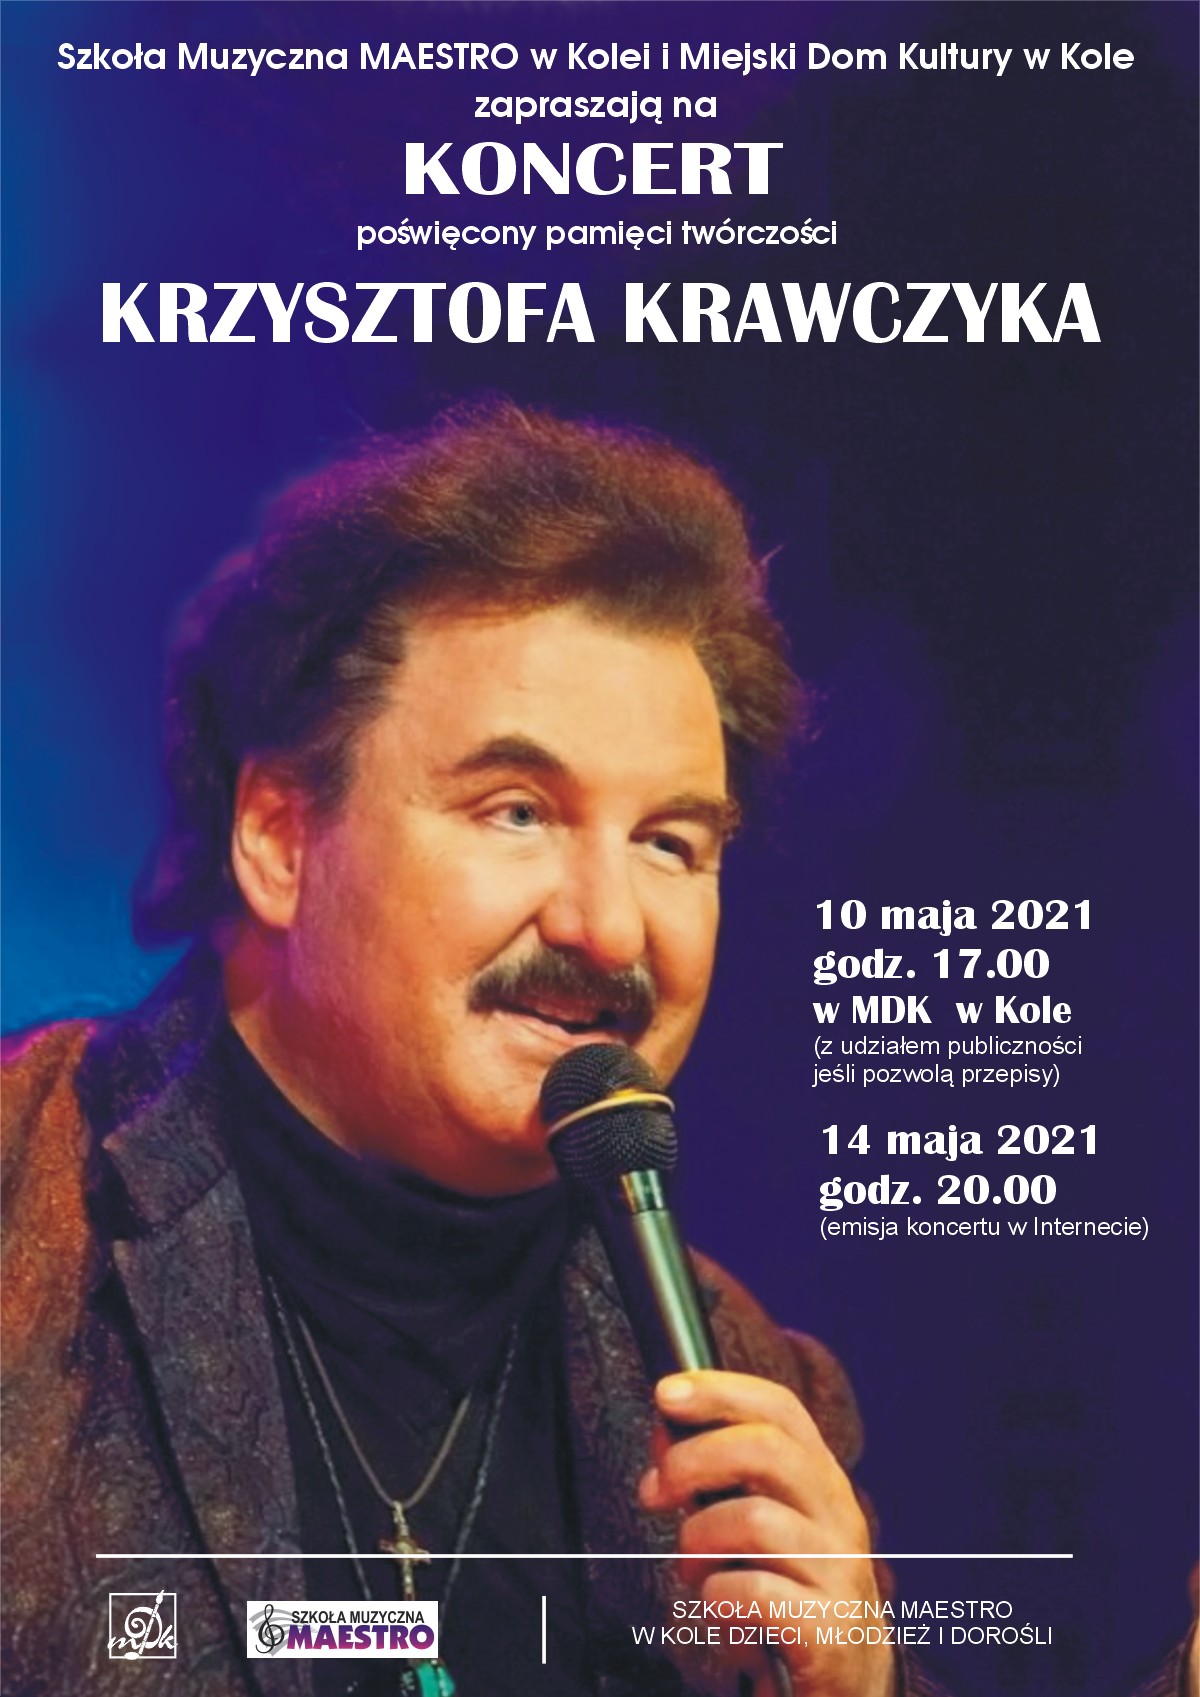 Plakat informujący o koncercie poświęconym twórczości Krzysztofa Krawczyka, treść poniżej.